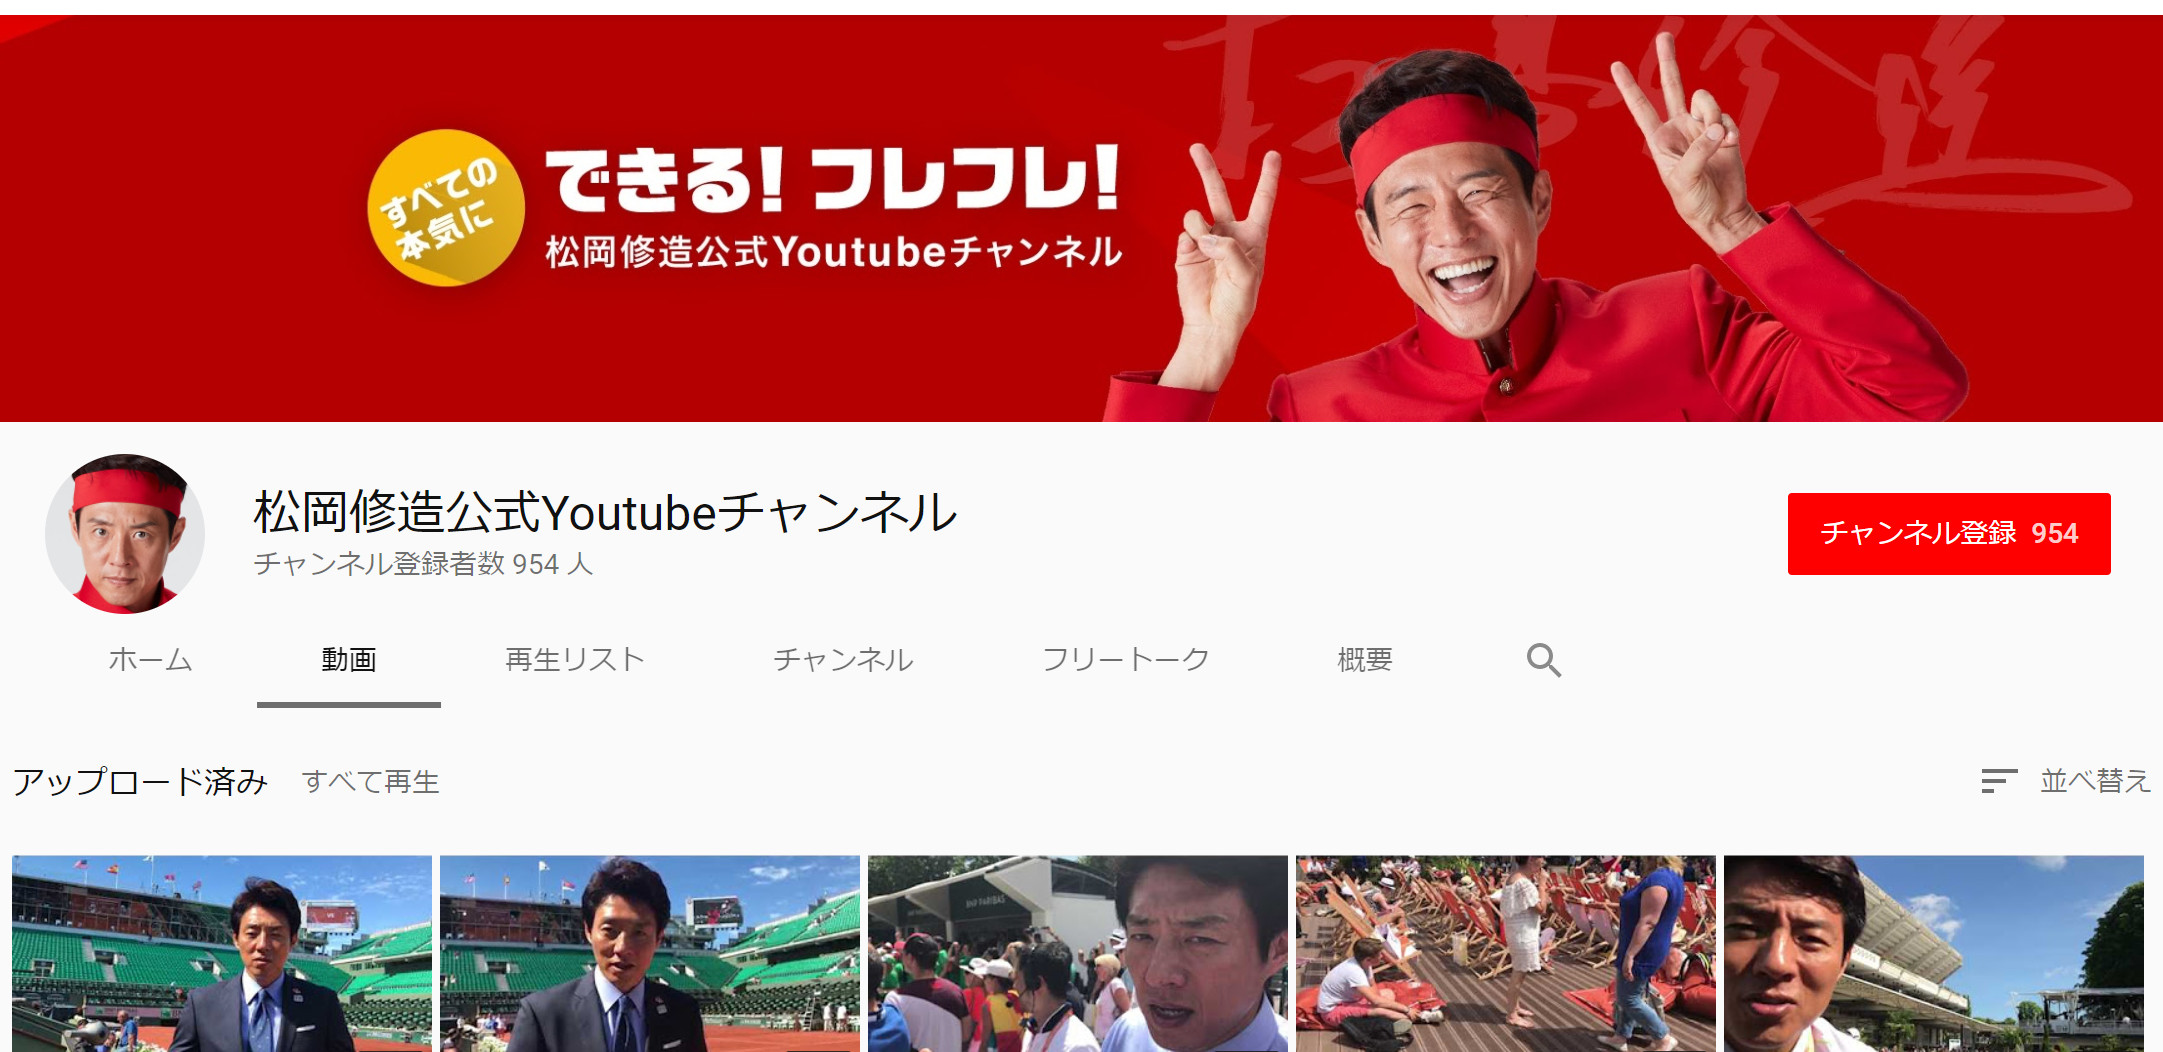 日本一アツい男 松岡修造が Youtubeチャンネル開設 一挙に0本以上の激熱メッセージ動画を公開 ロケットニュース24